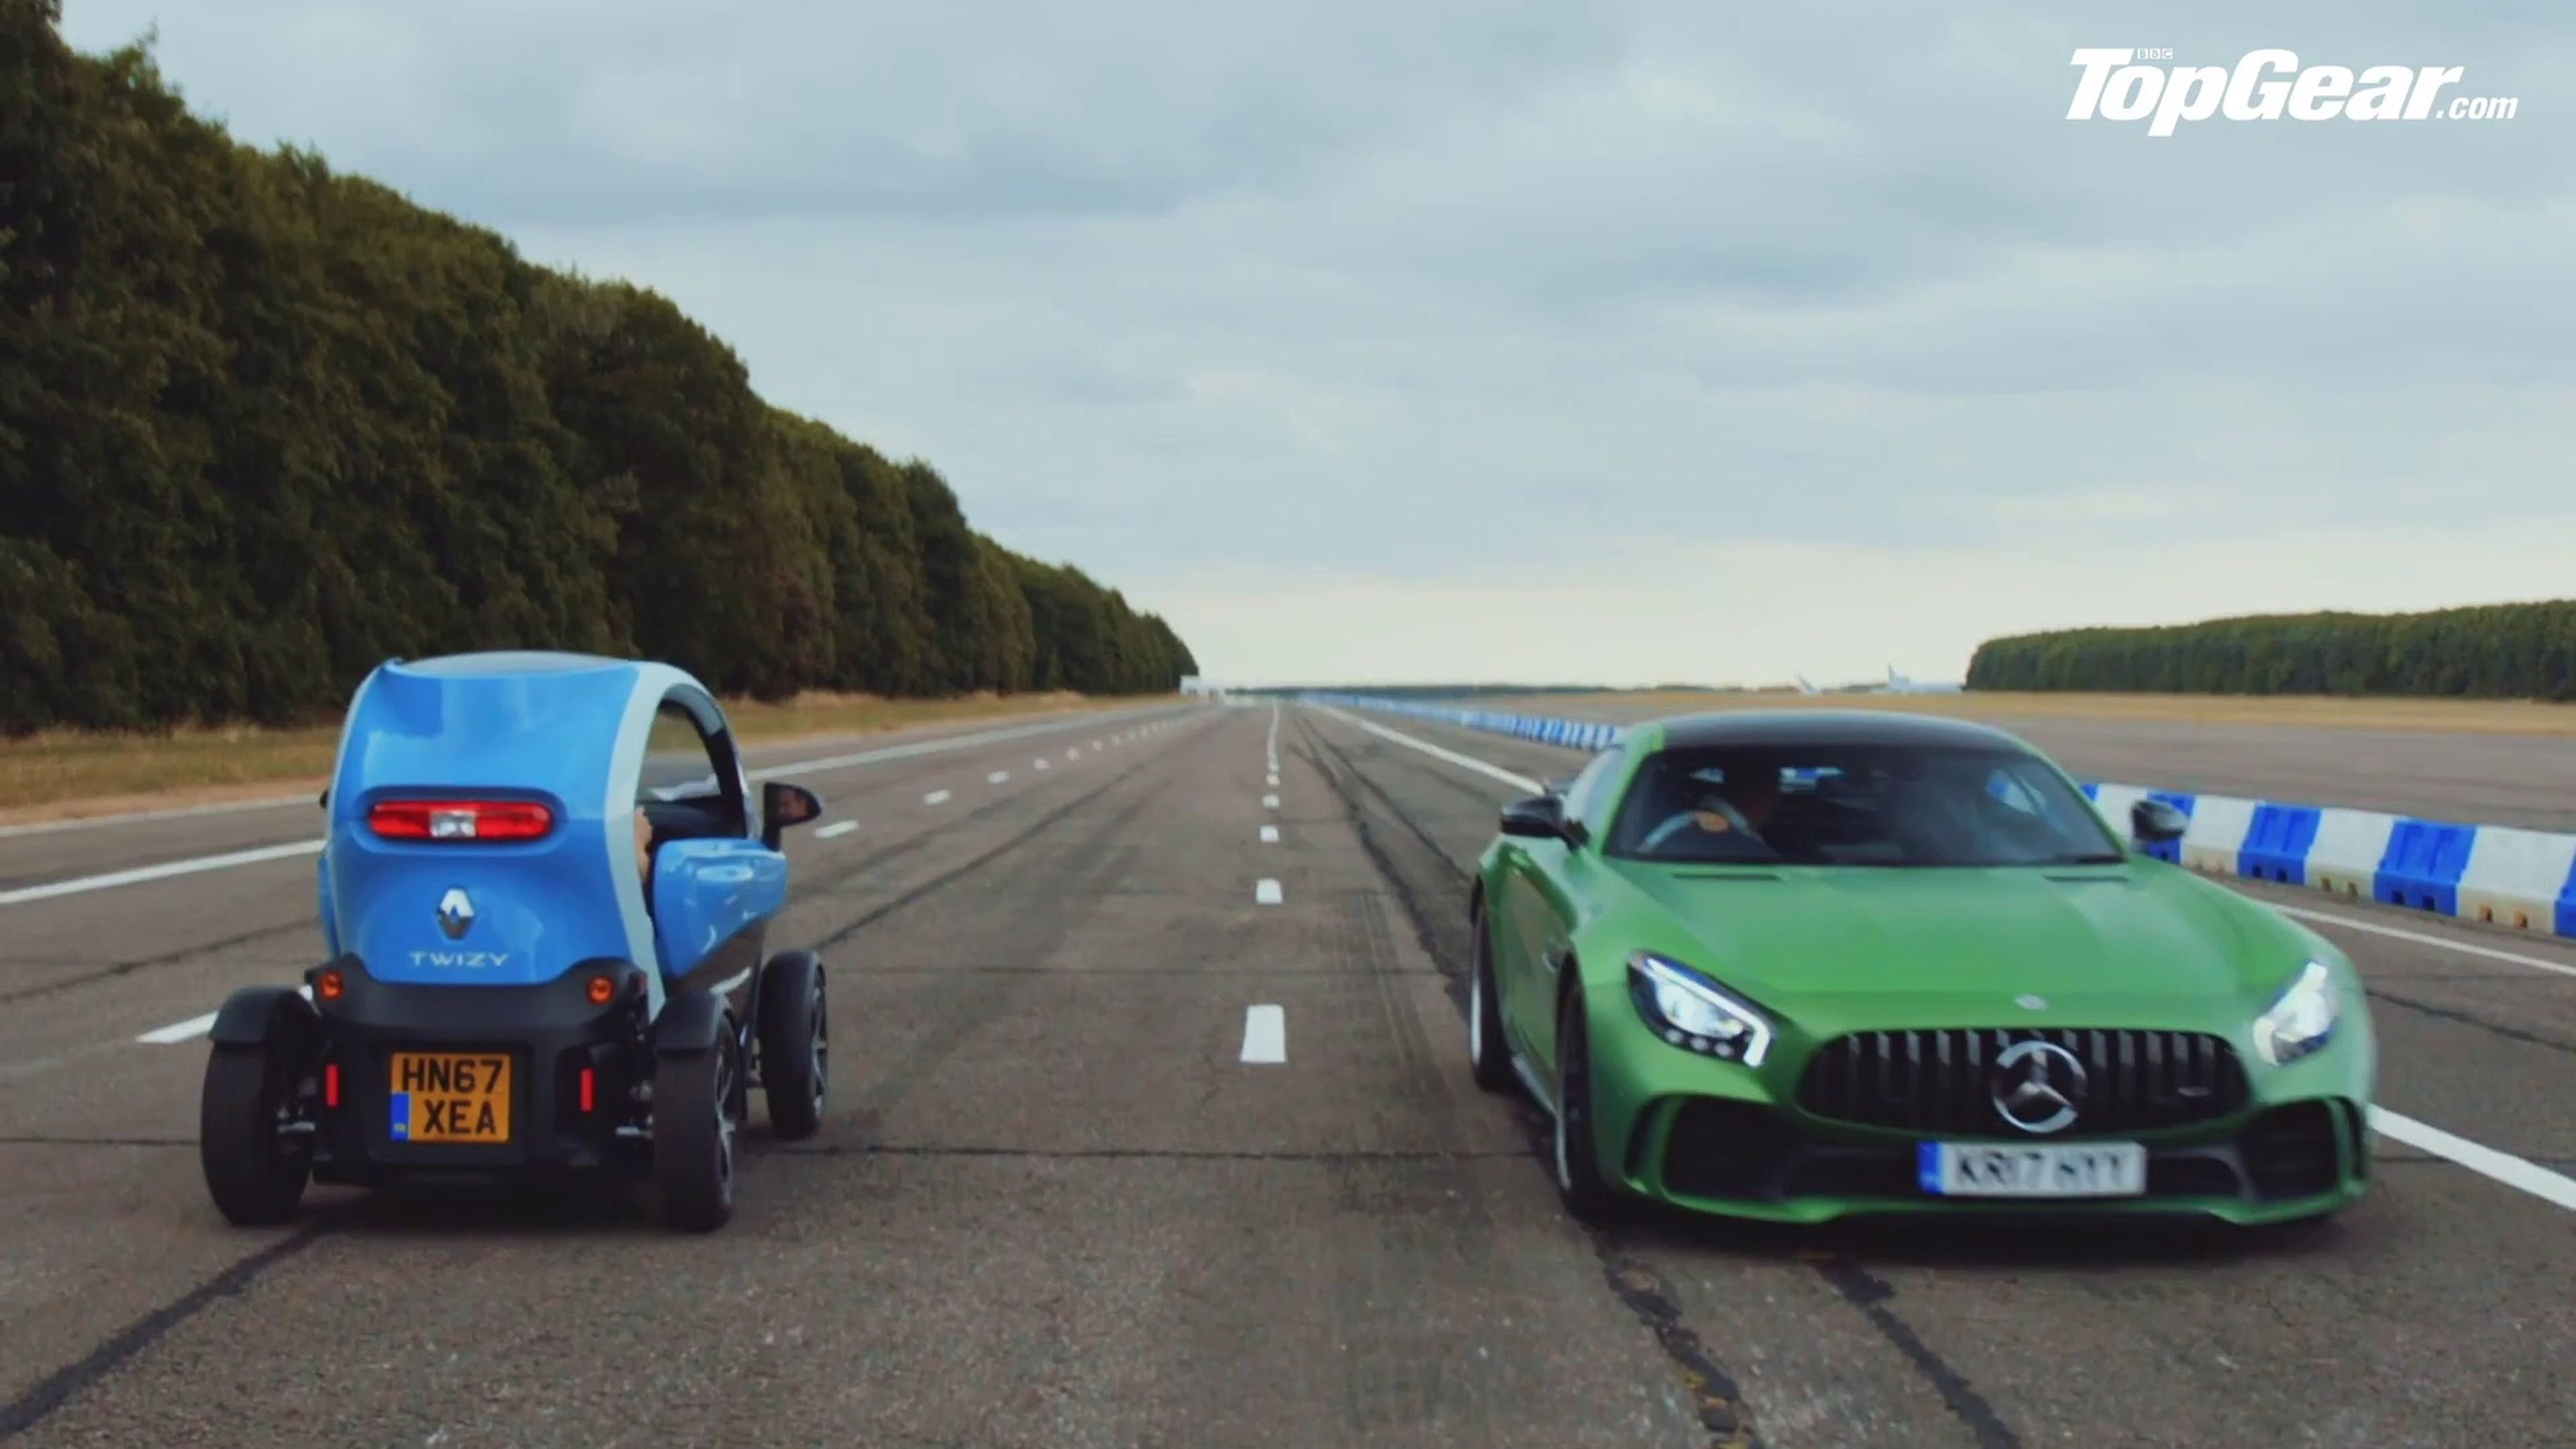 VÍDEO: La Drag Race más loca, un Renault Twizy vs Mercedes AMG GT R ¡marcha atrás!